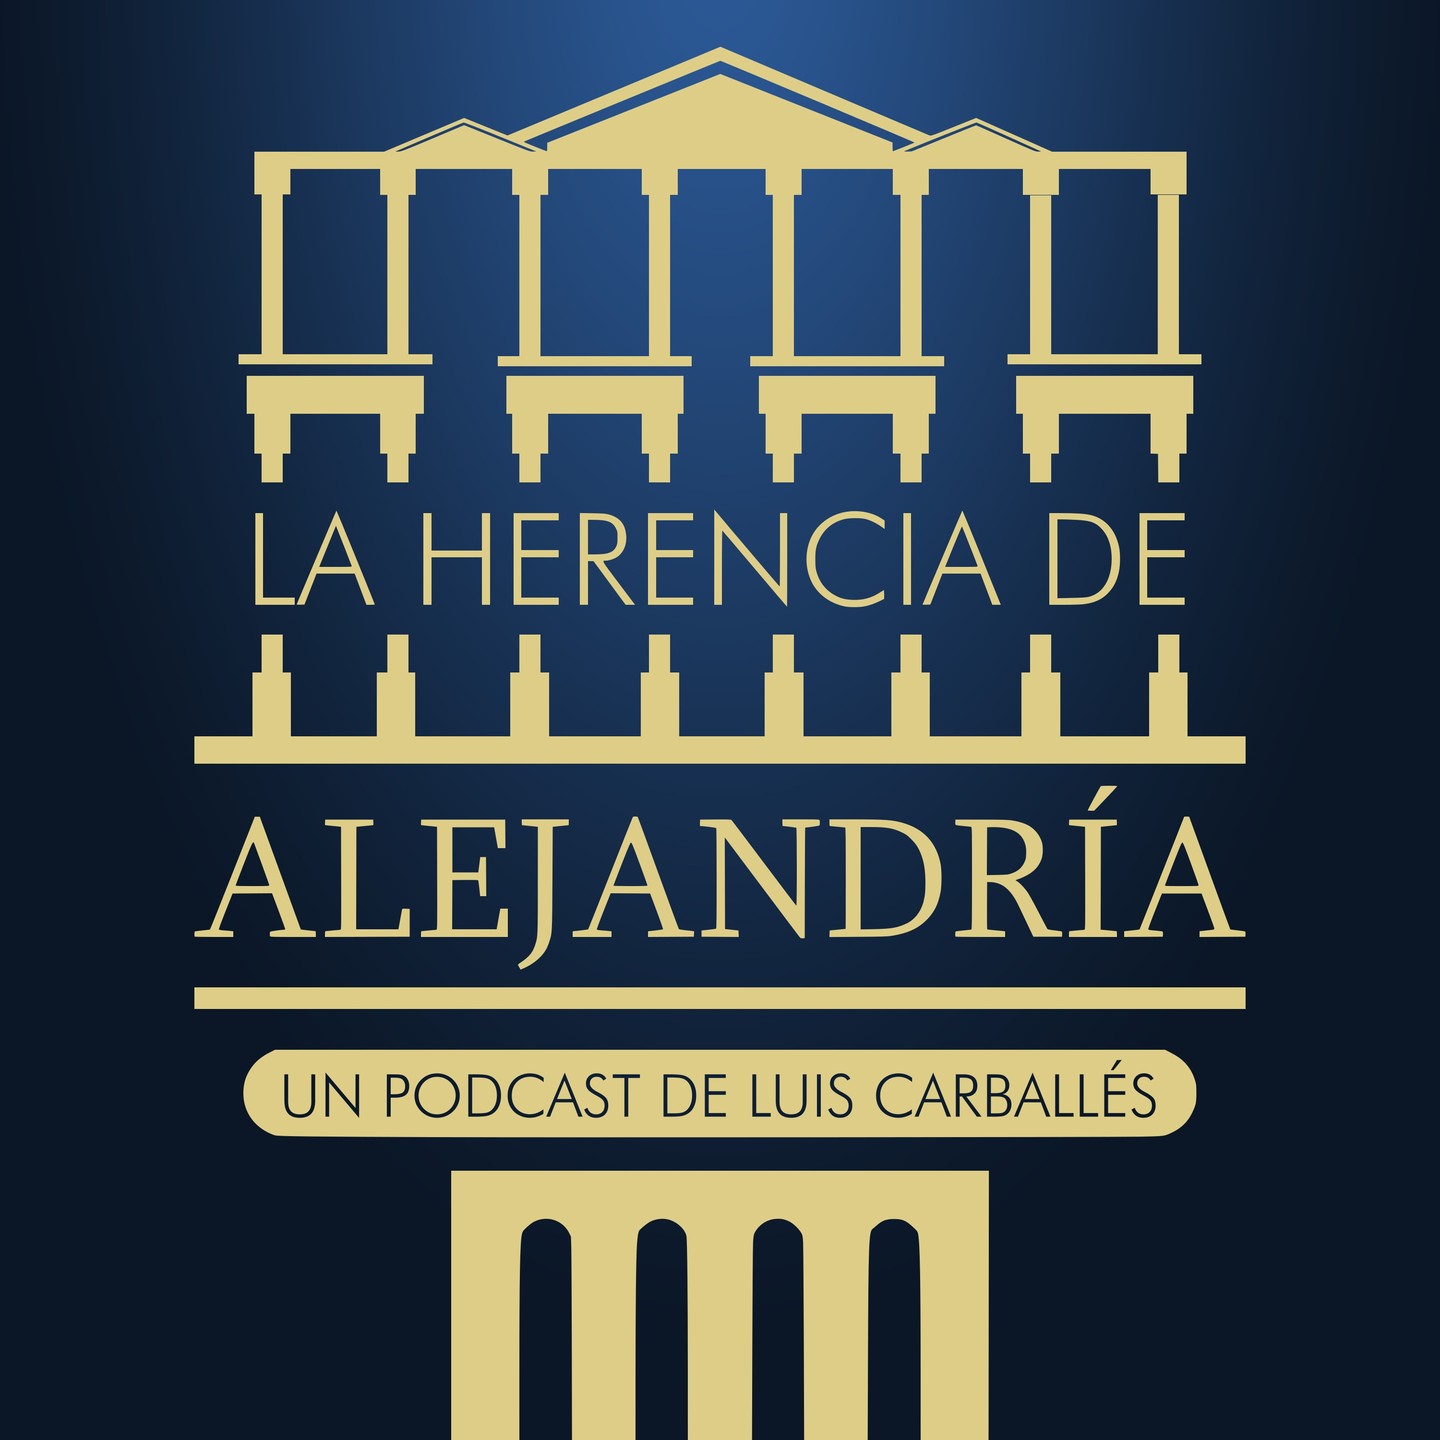 Follow @luiscarballeslocutor

Ya está disponible "La Herencia de Alejandría", mi nuevo podcast de recomendaciones literarias. Escuchalo en tu plataforma de podcast favorita. 
Comenta con el hashtag #laherenciadealejandro -
-
-
-
-
-
#produccionescarballes #luiscarballeslocutor #laherenciadealejandria #mariovargasllosa #podcastliterario #recomendacionesliterarias #reseñasdelibros #podcast #recomendacionesdelibros 
#lafiestadelchivo